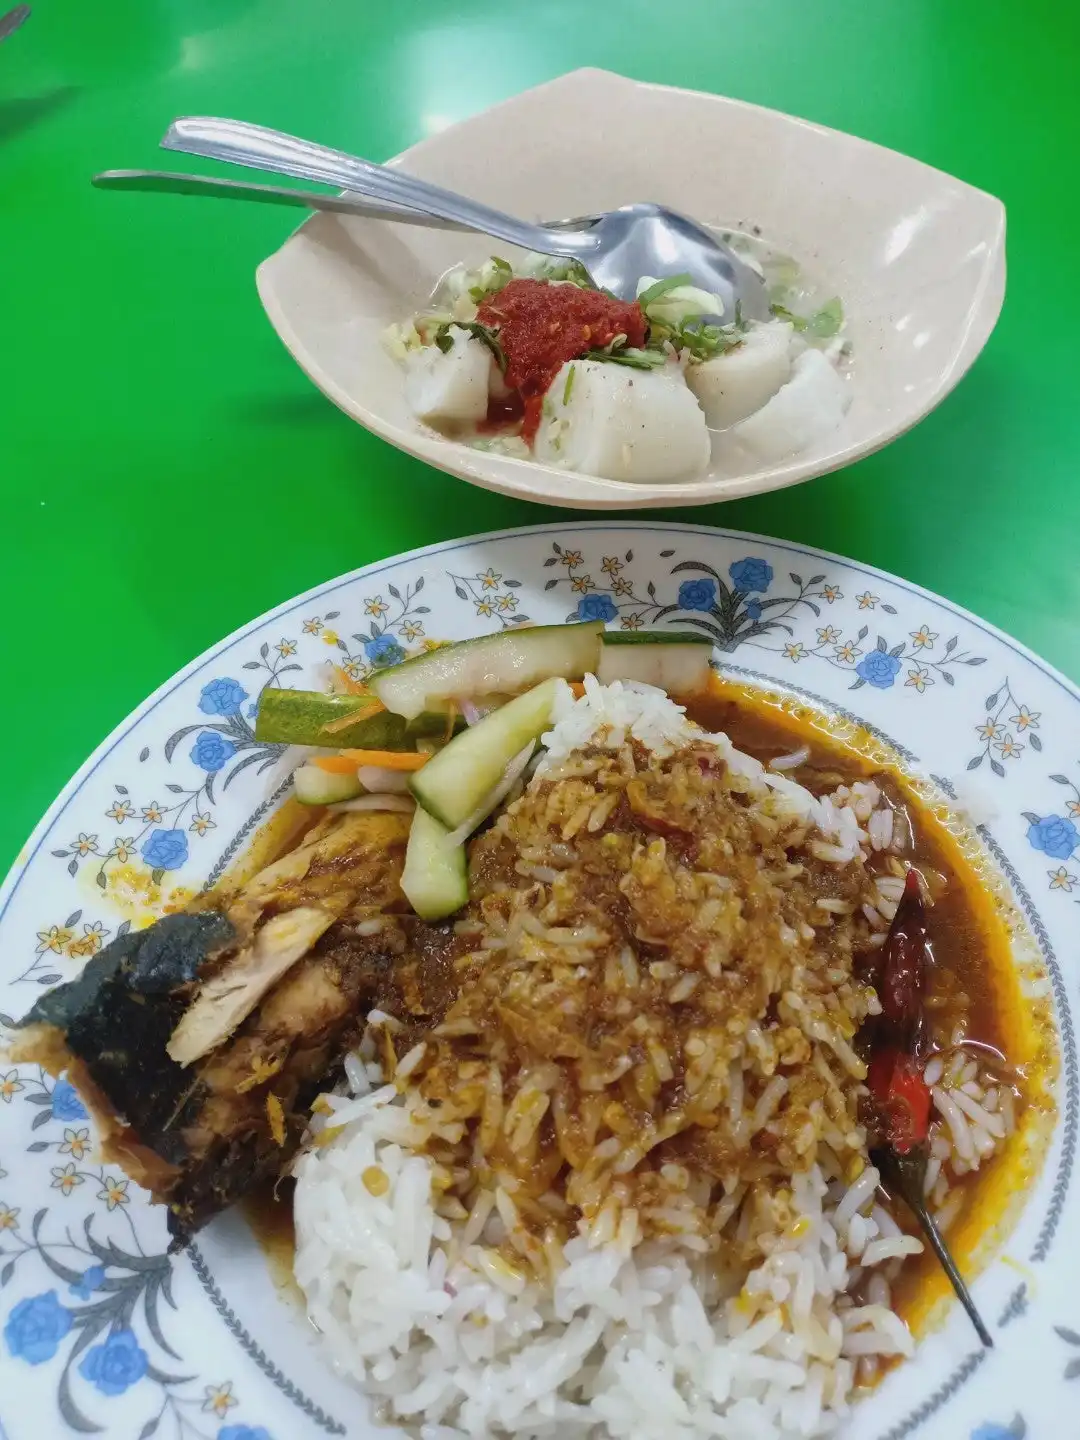 Kafe Masakan Terengganu Asli